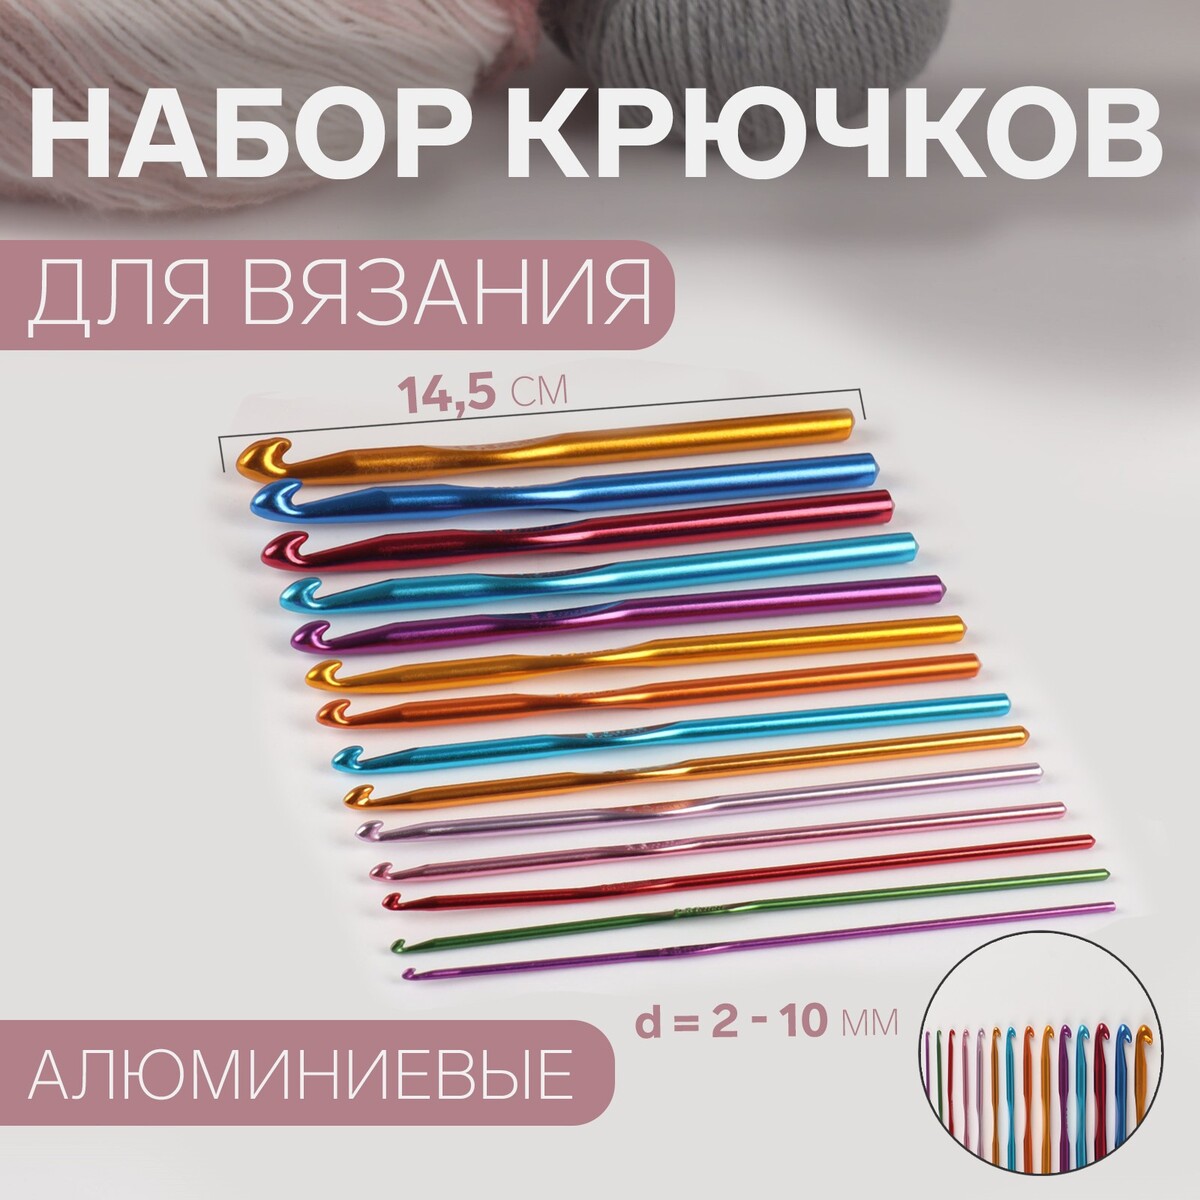 Набор крючков для вязания, d = 2-10 мм, 14,5 см, 14 шт, цвет разноцветный арифметика вязания авторский метод расчетов и вязания одежды с имитацией втачного рукава